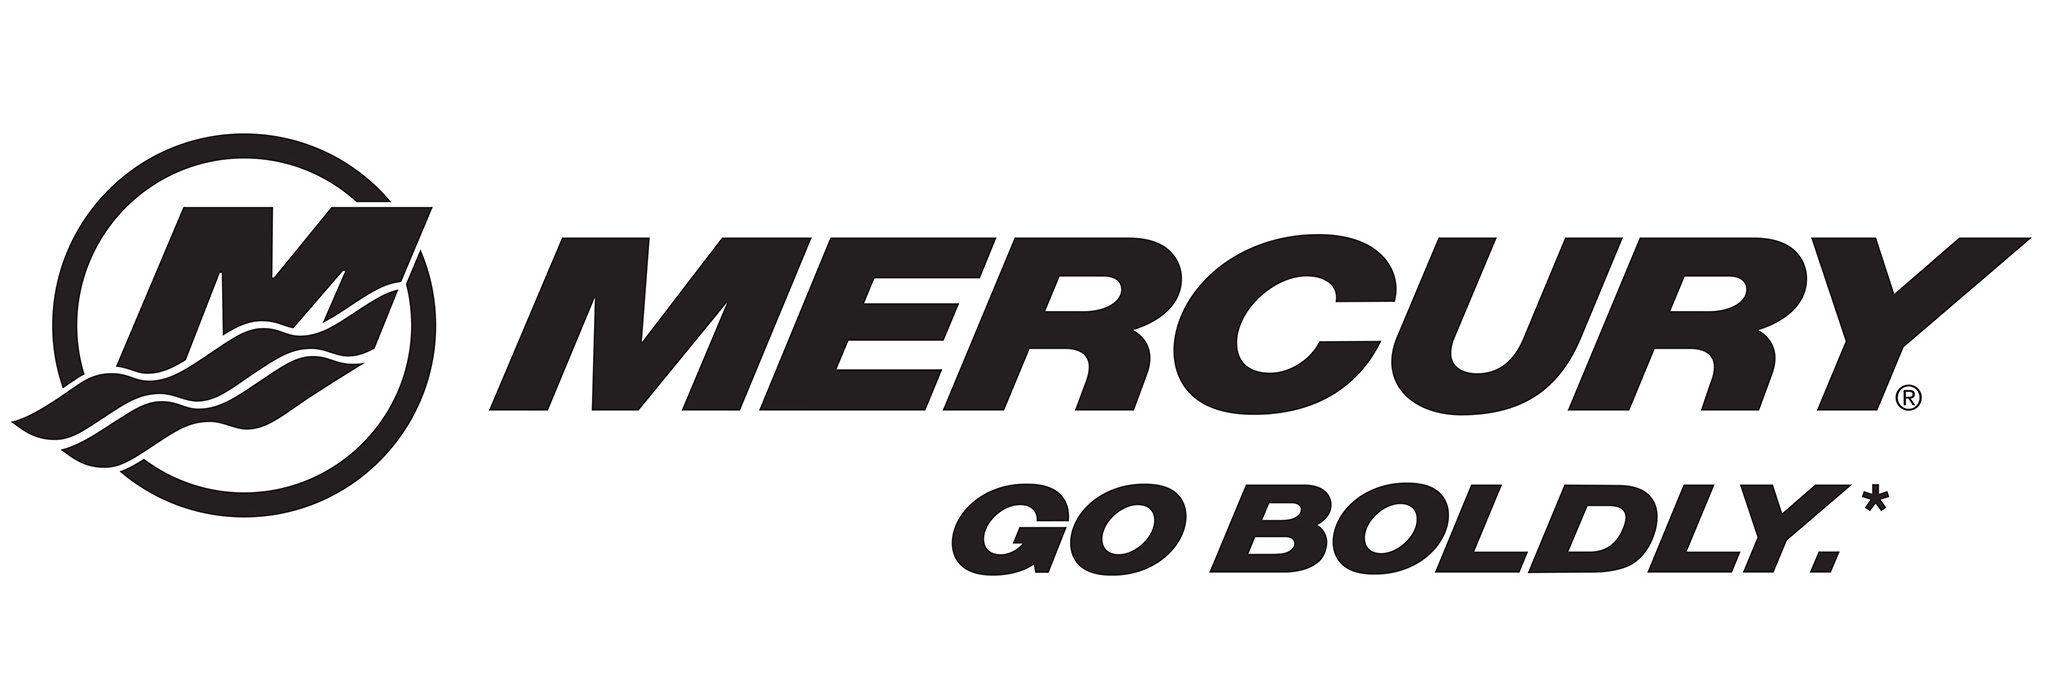 Mercury Logo - Mercury Go Boldly English Lockup Flat_logo - Fox-Wolf Watershed Alliance